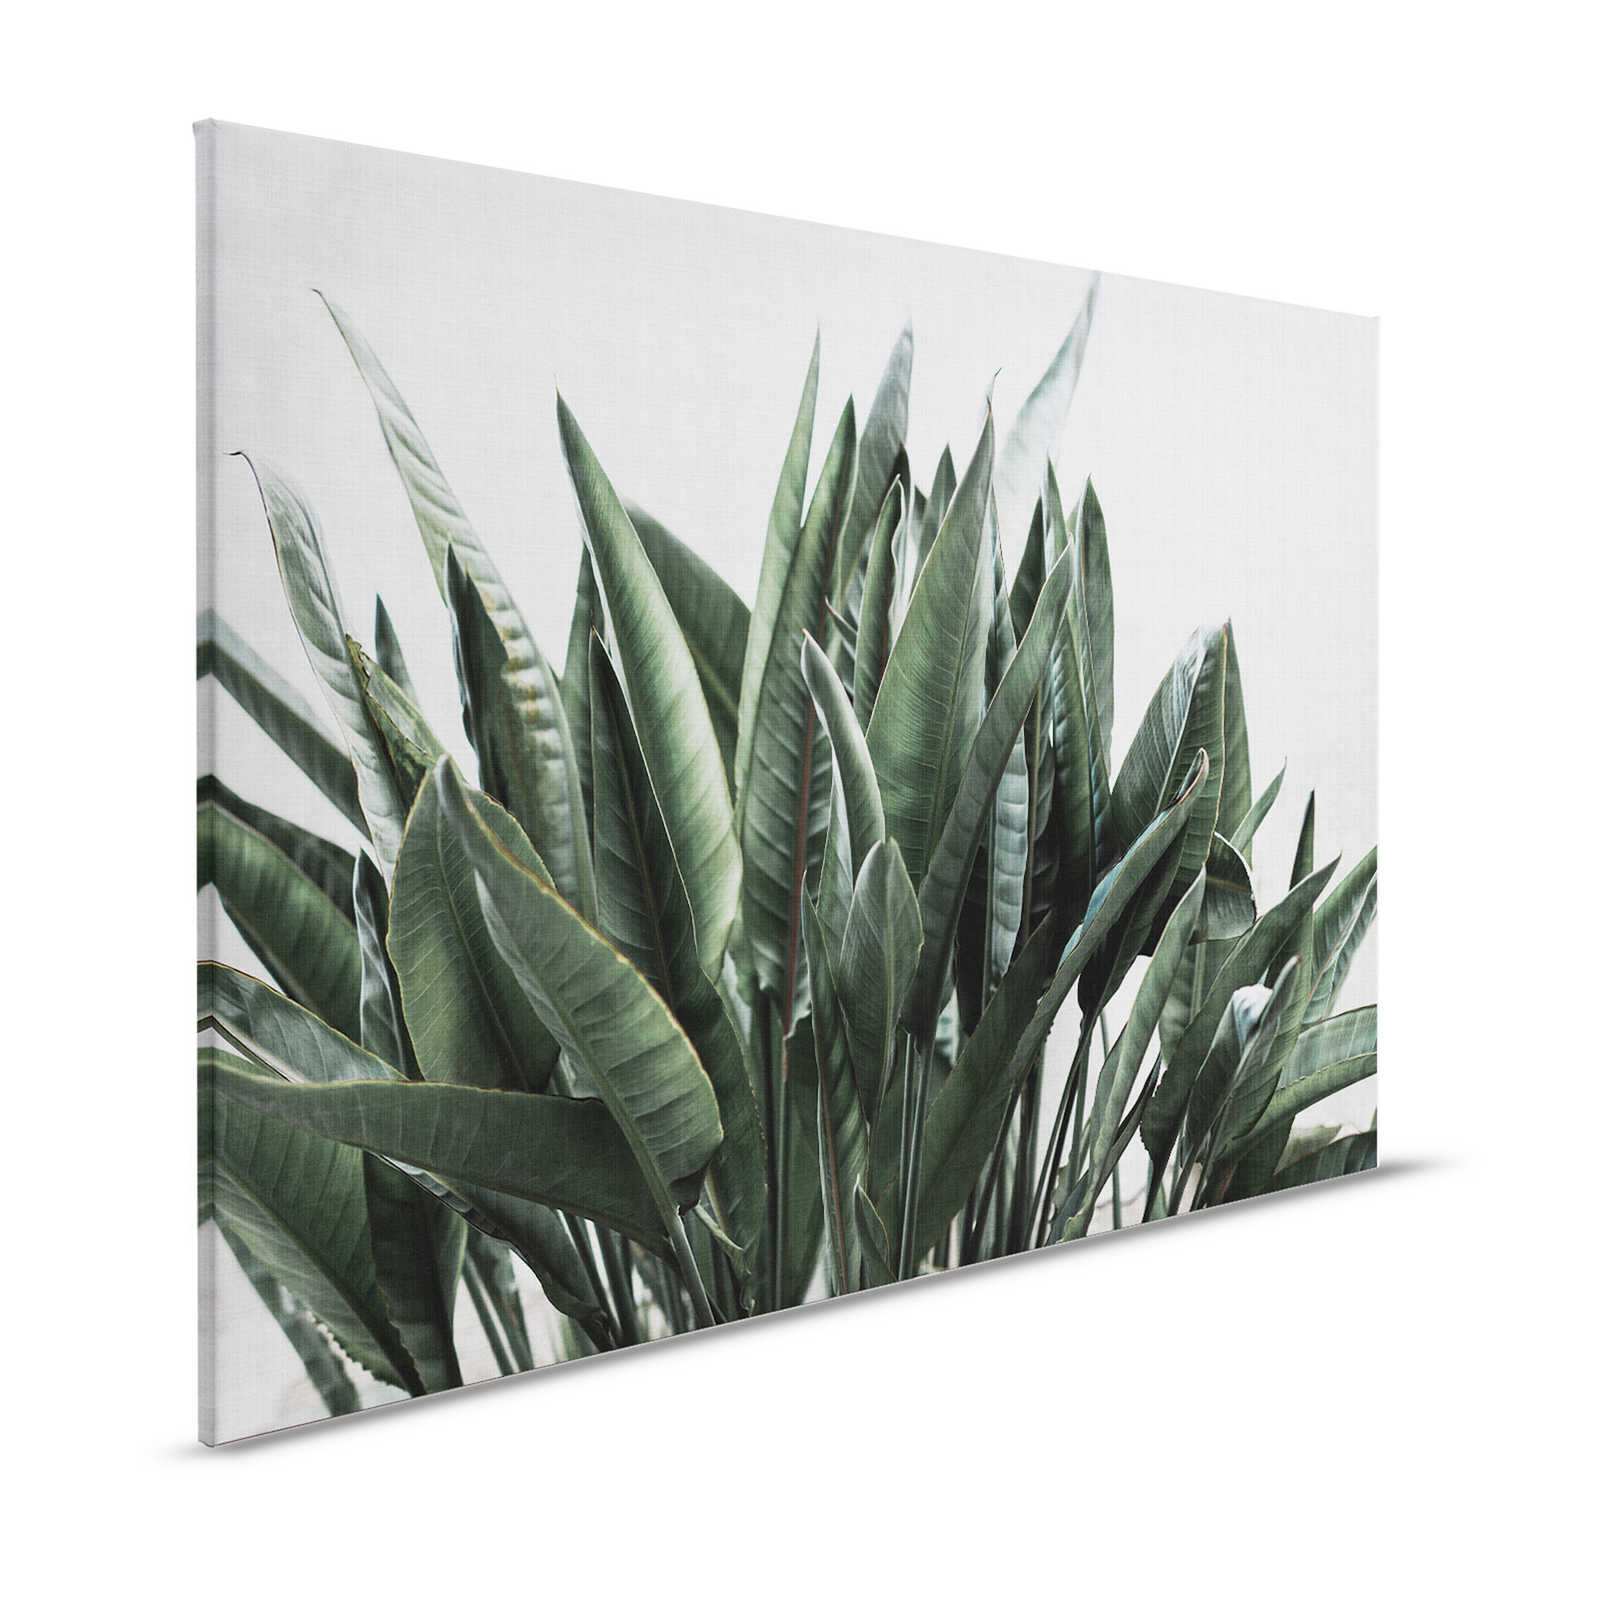 Urban jungle 2 - Feuilles de palmier toile, structure lin naturel plantes exotiques - 1,20 m x 0,80 m
